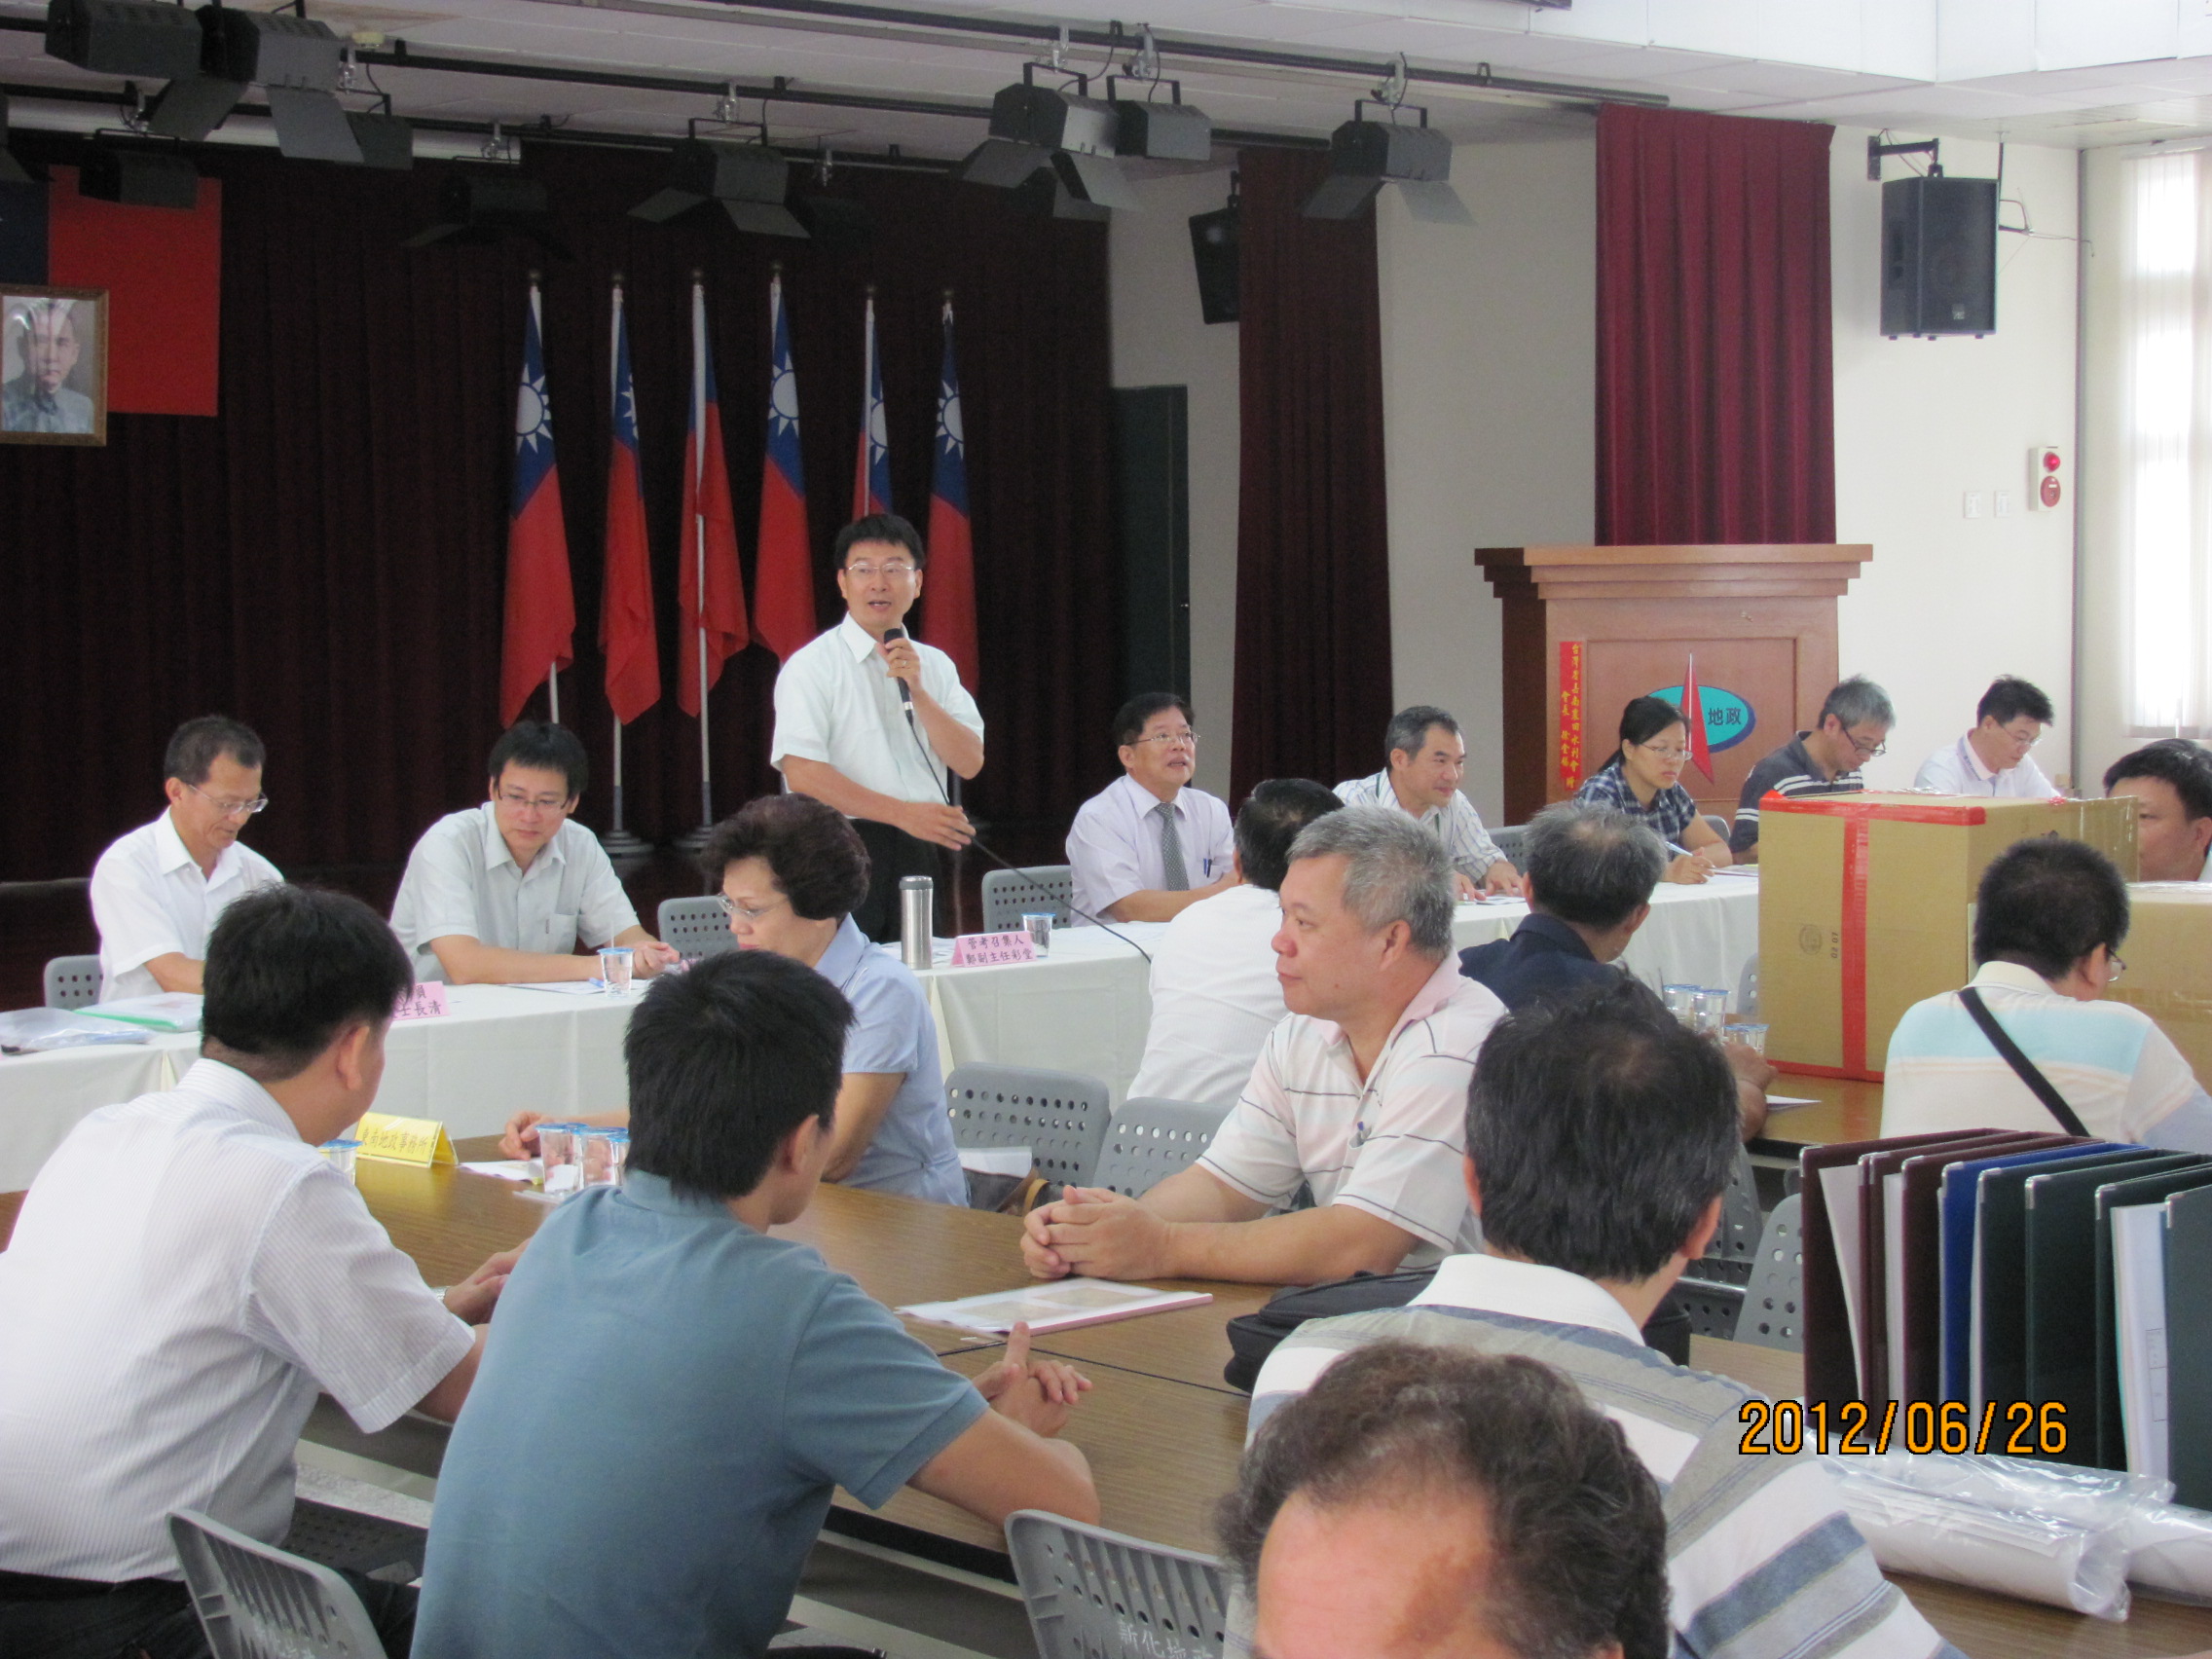 鄭副主任彩堂帶領管考小組至臺南市政府辦理管考情形